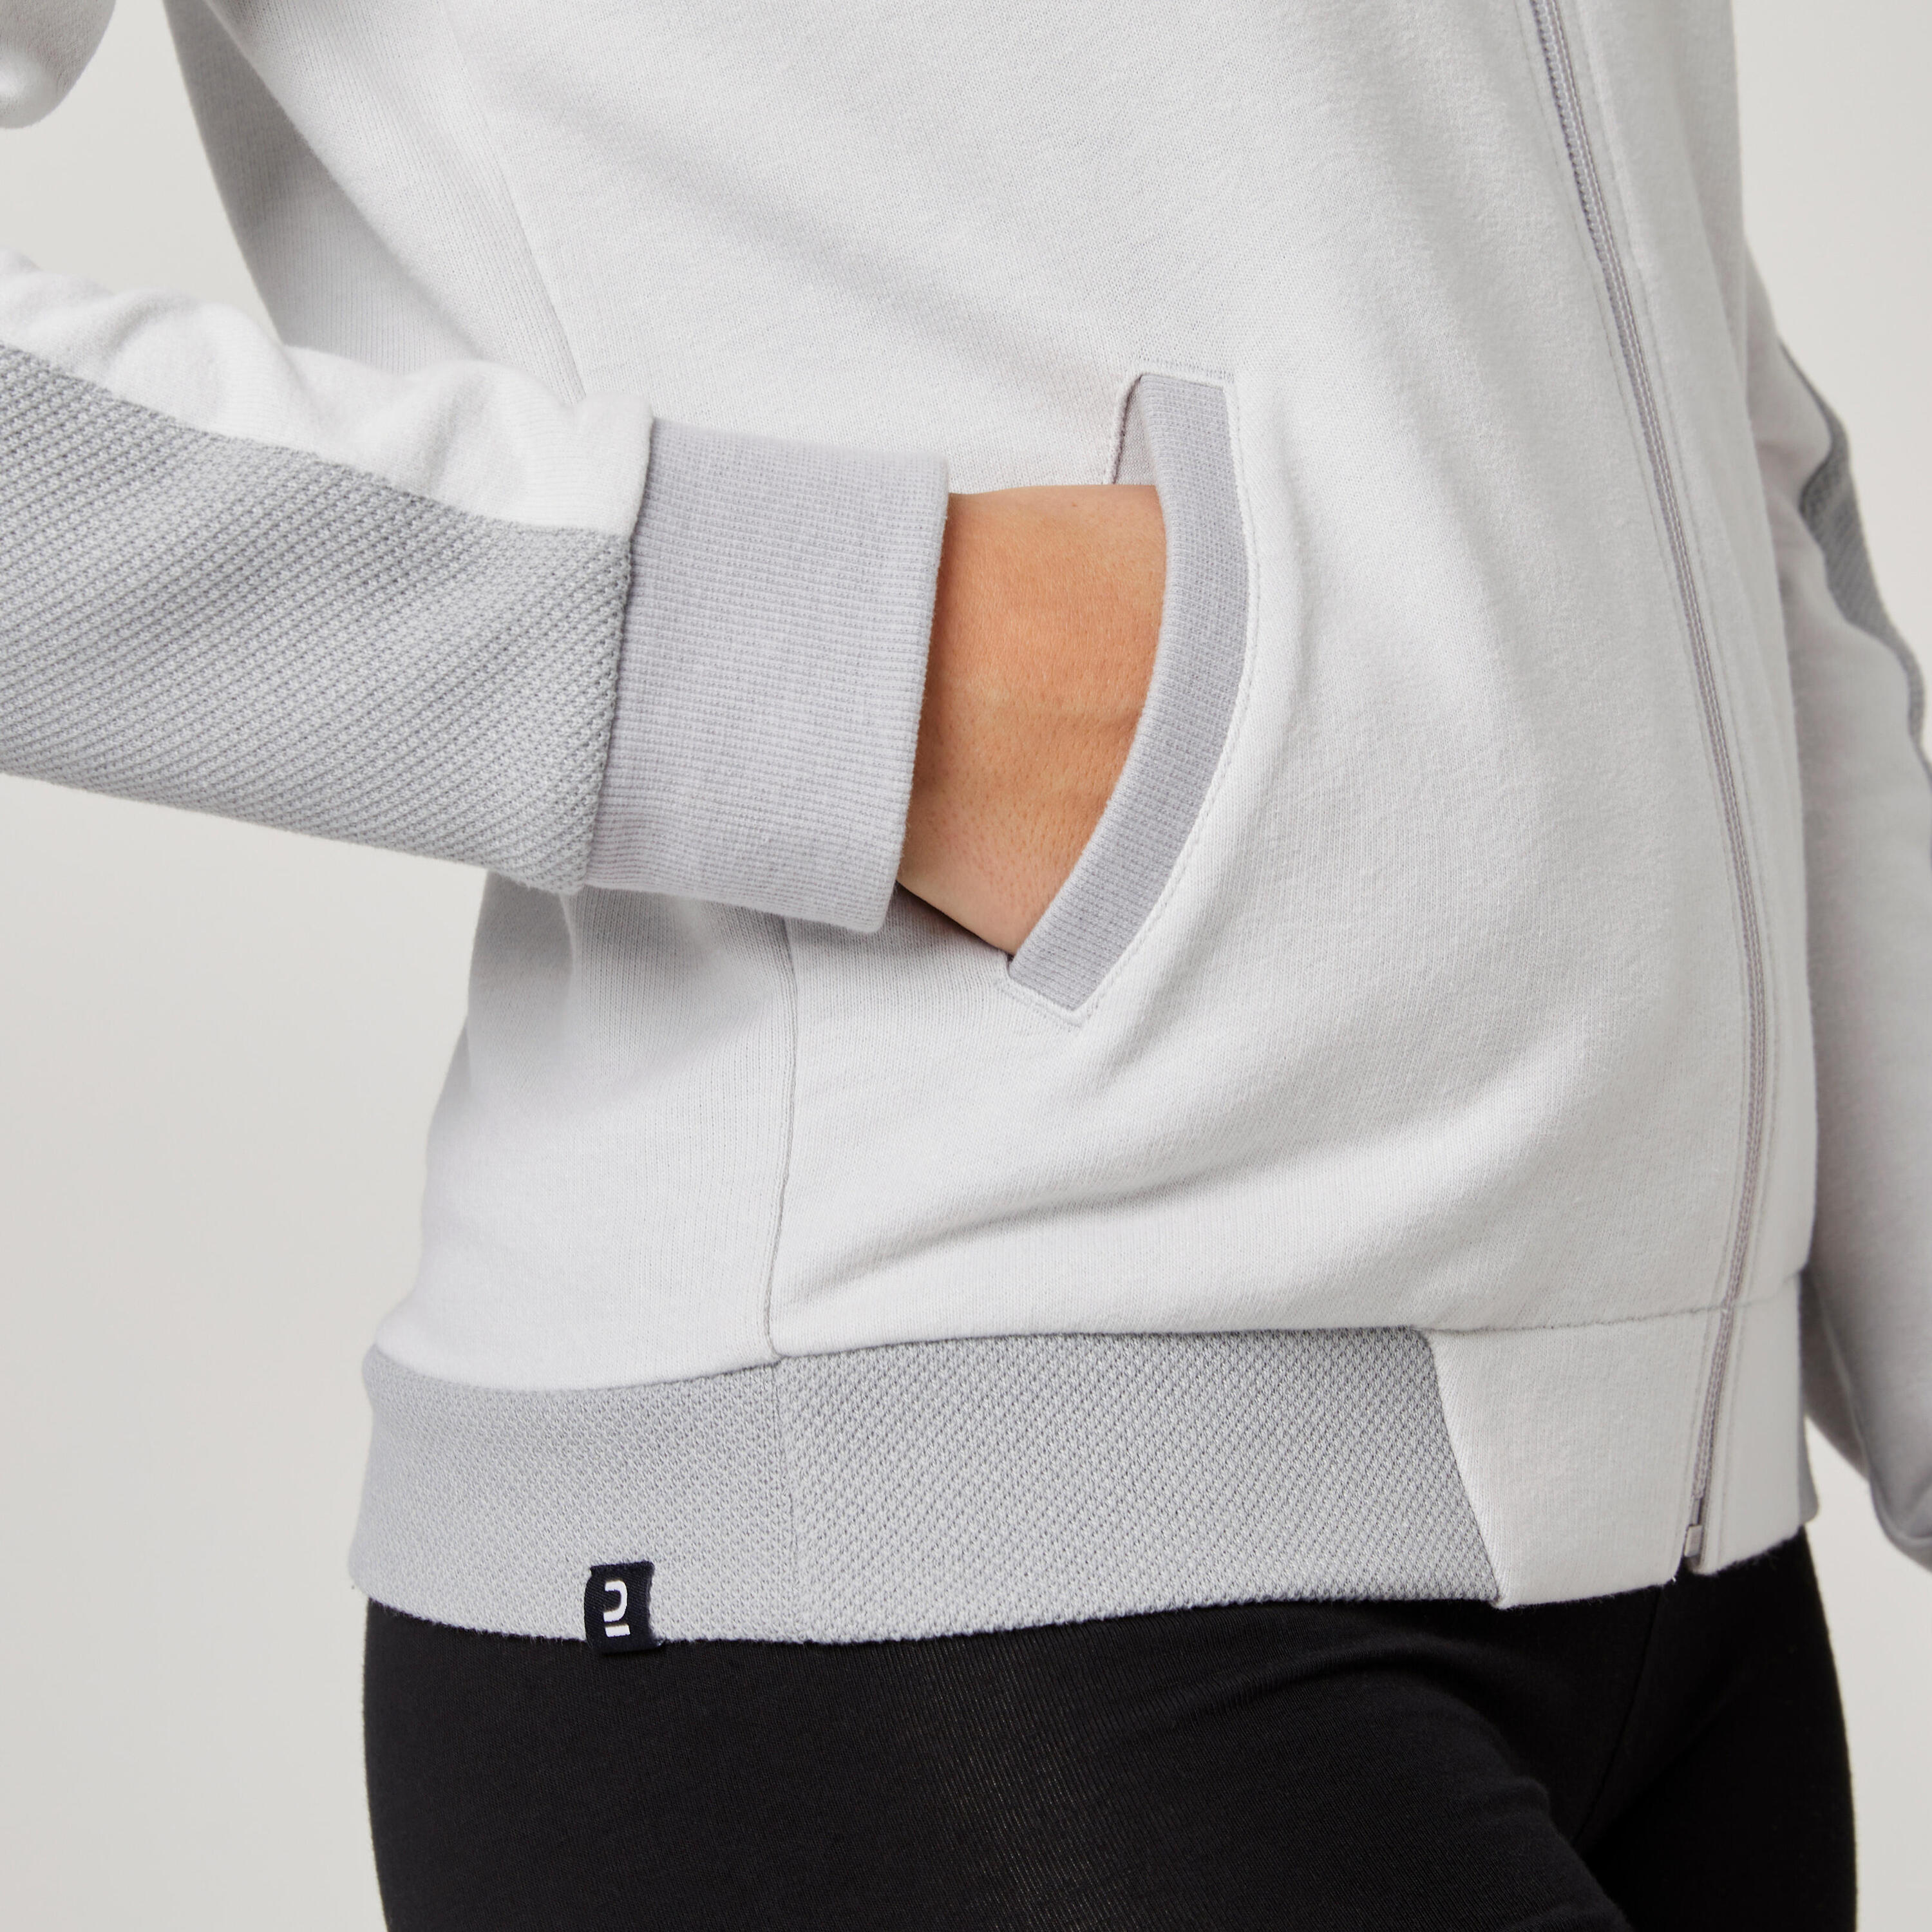 Women's Zip-Up Fitness Sweatshirt 520 - Light Grey 6/7